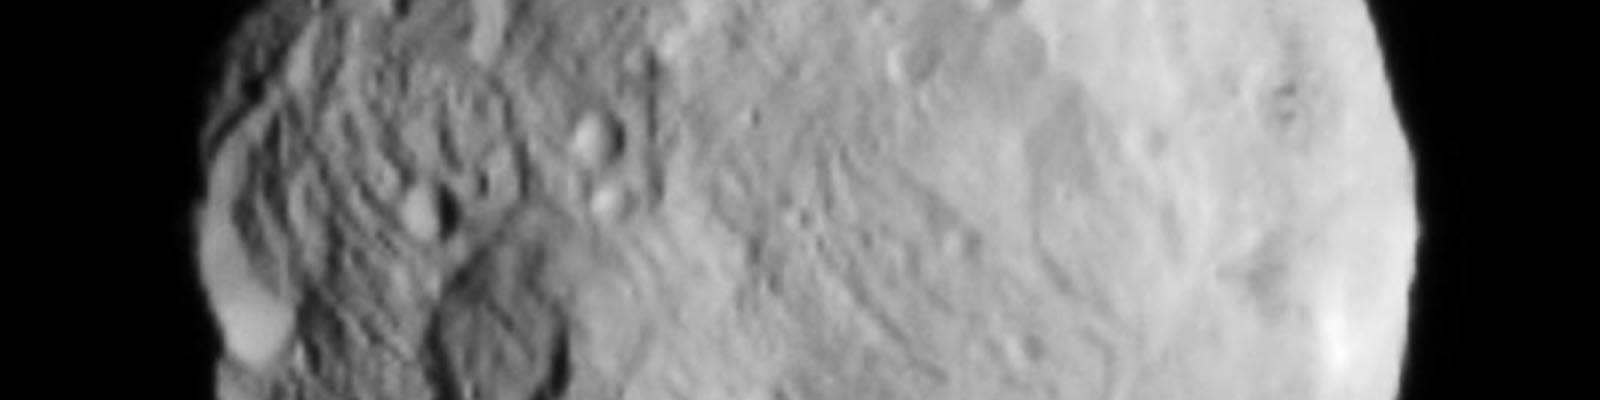 Dawn se place en orbite autour de Vesta